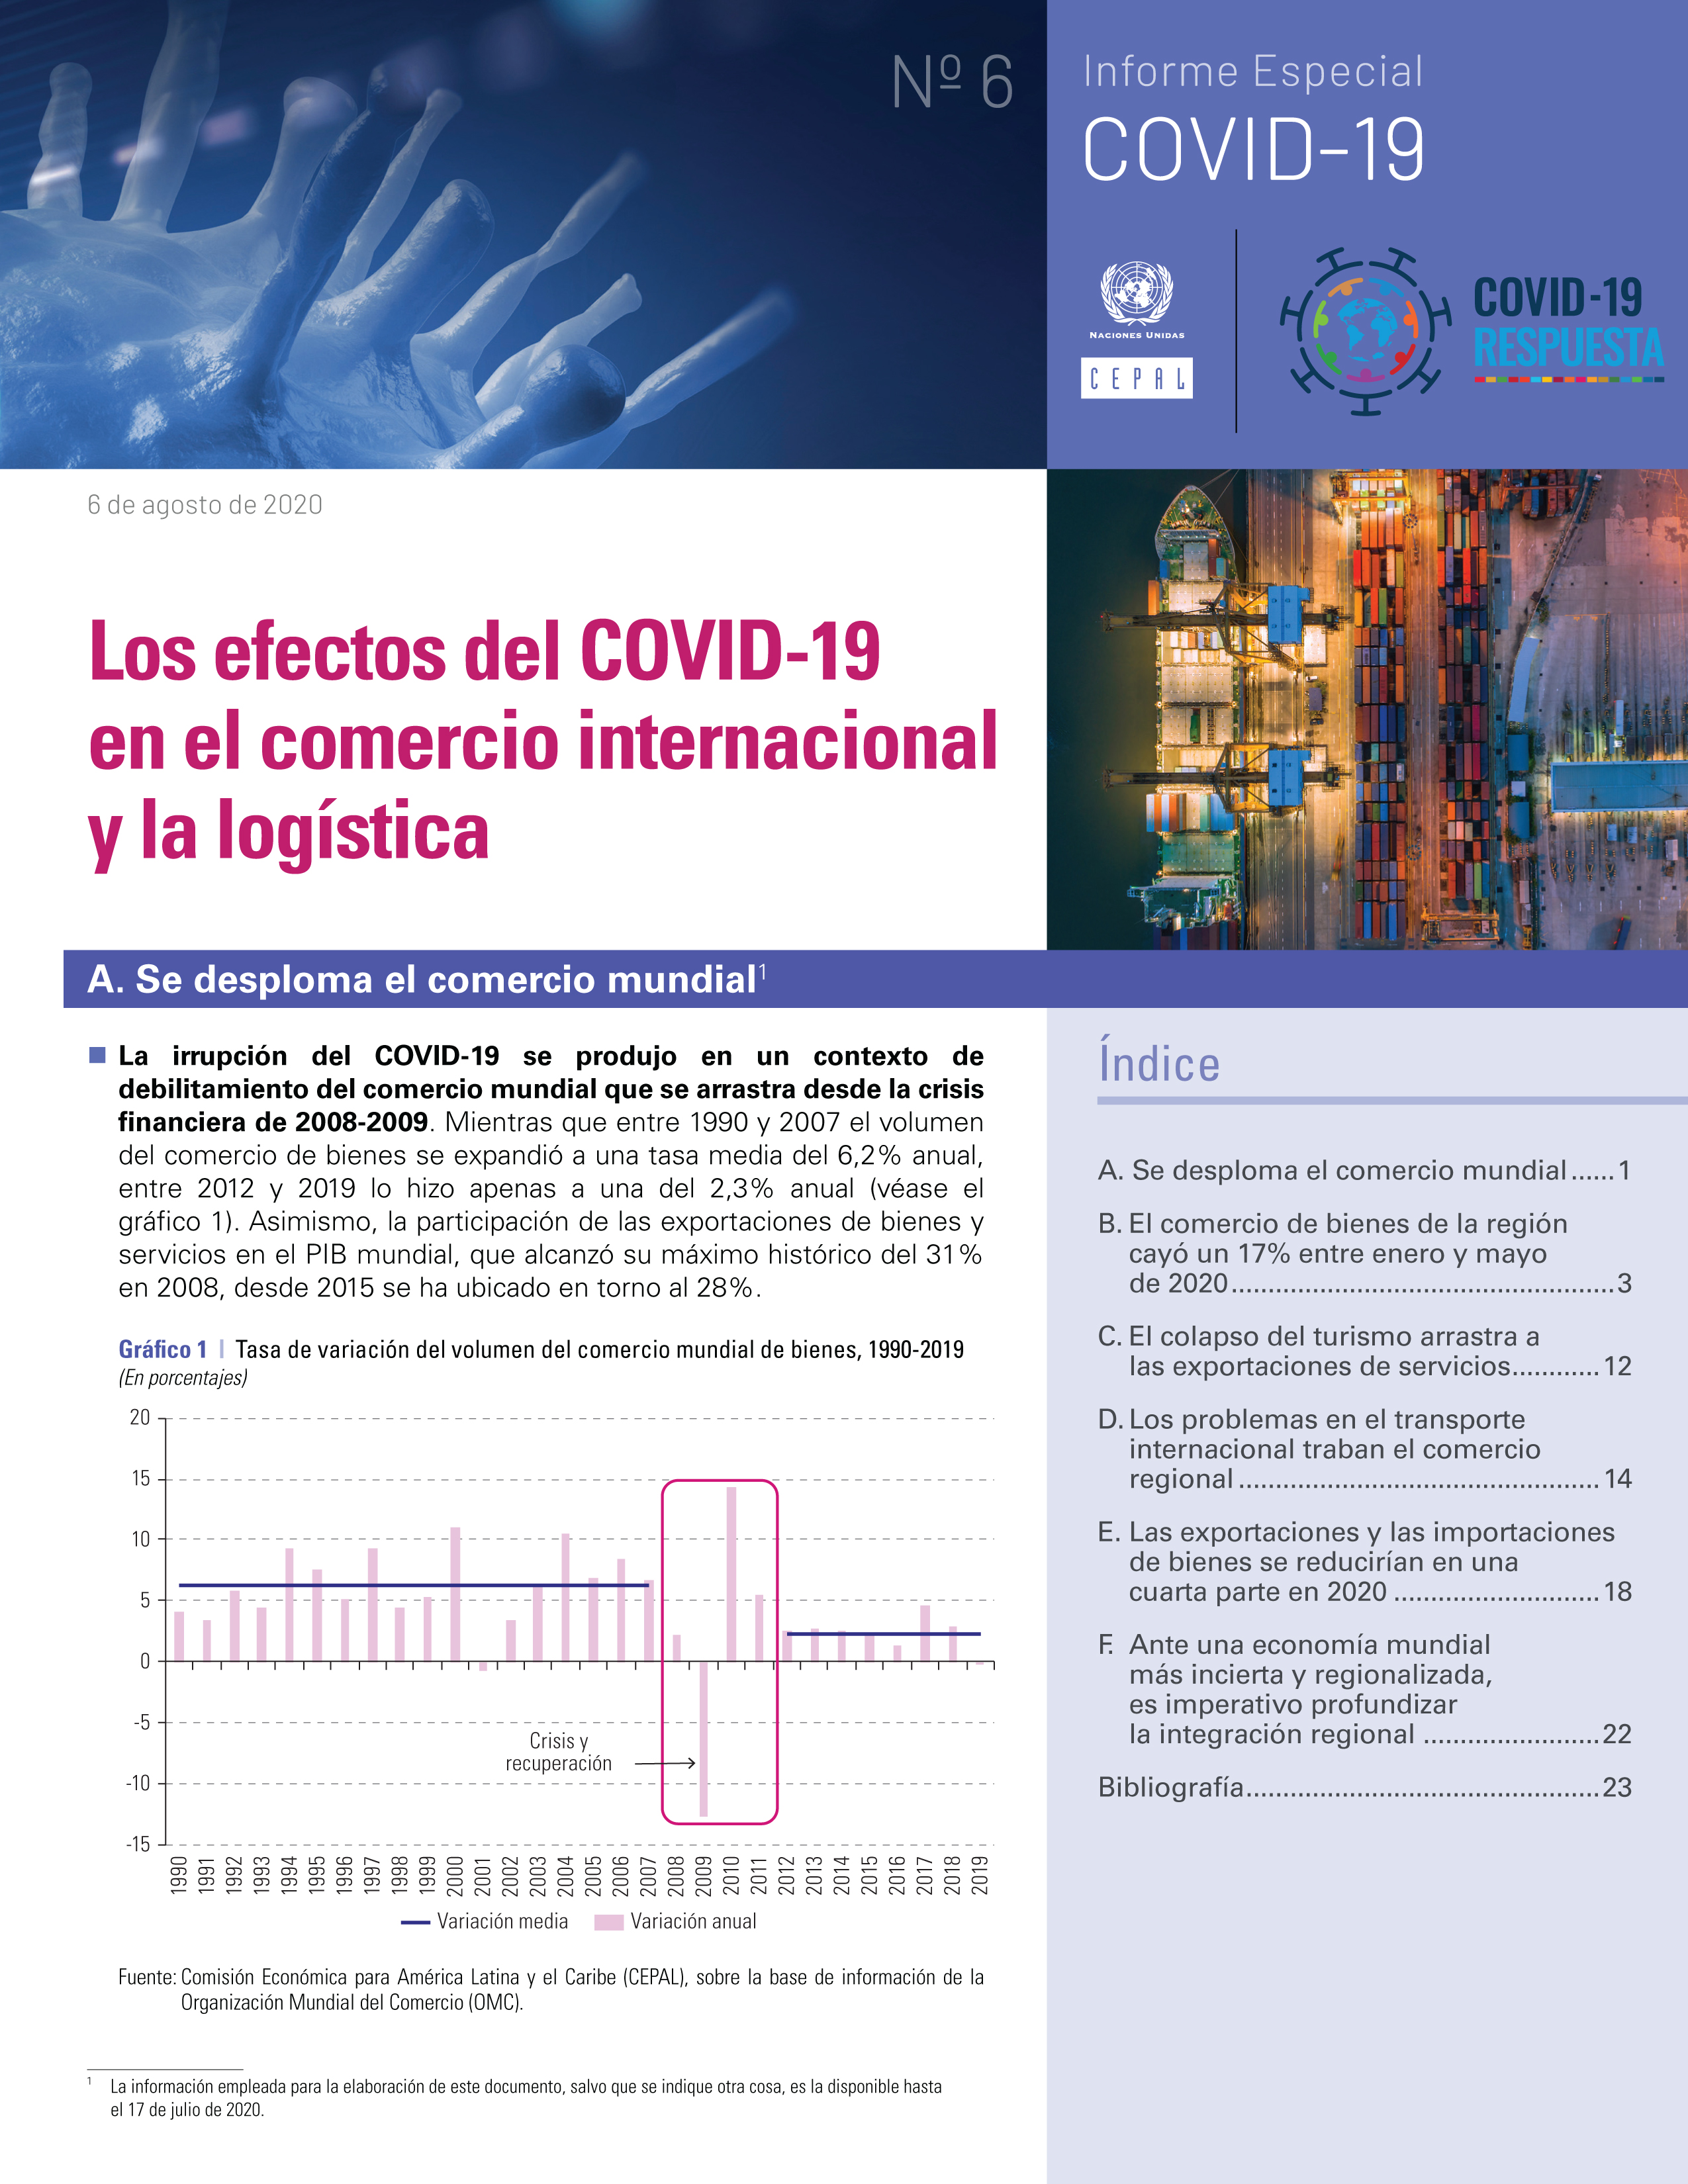 image of Los efectos del COVID-19 en el comercio internacional y la logística